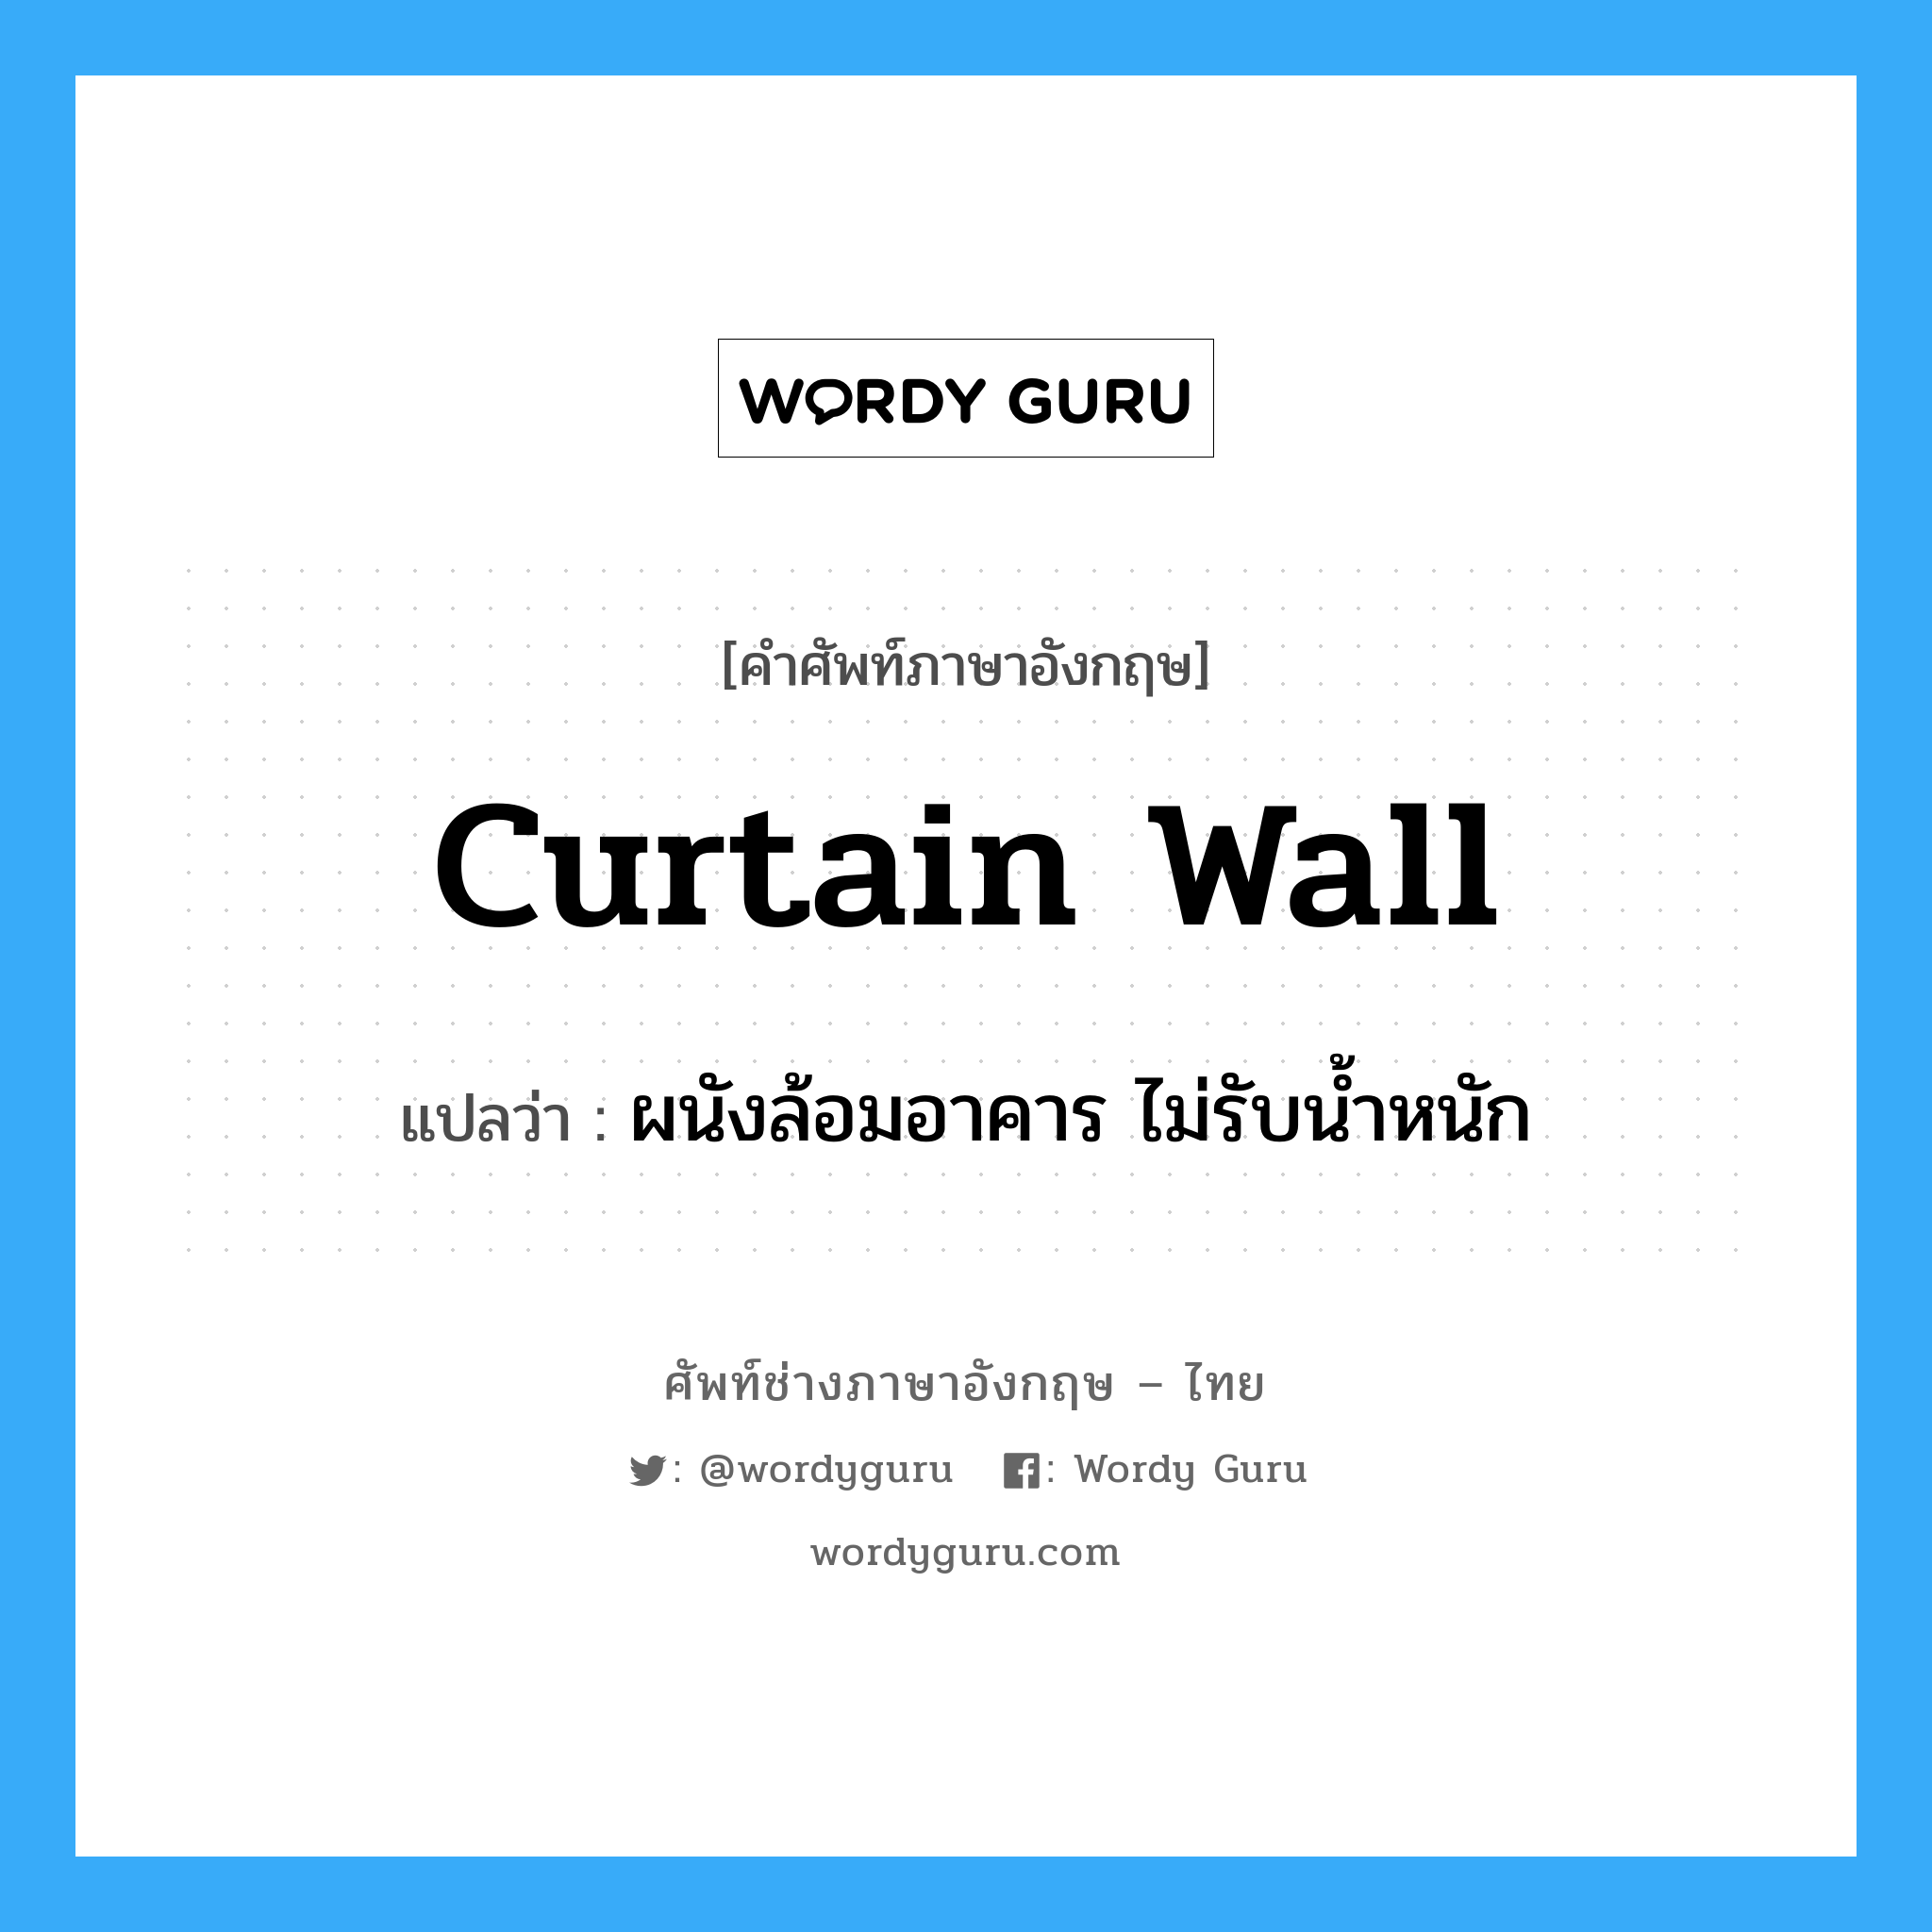 curtain-wall แปลว่า?, คำศัพท์ช่างภาษาอังกฤษ - ไทย curtain wall คำศัพท์ภาษาอังกฤษ curtain wall แปลว่า ผนังล้อมอาคาร ไม่รับน้ำหนัก